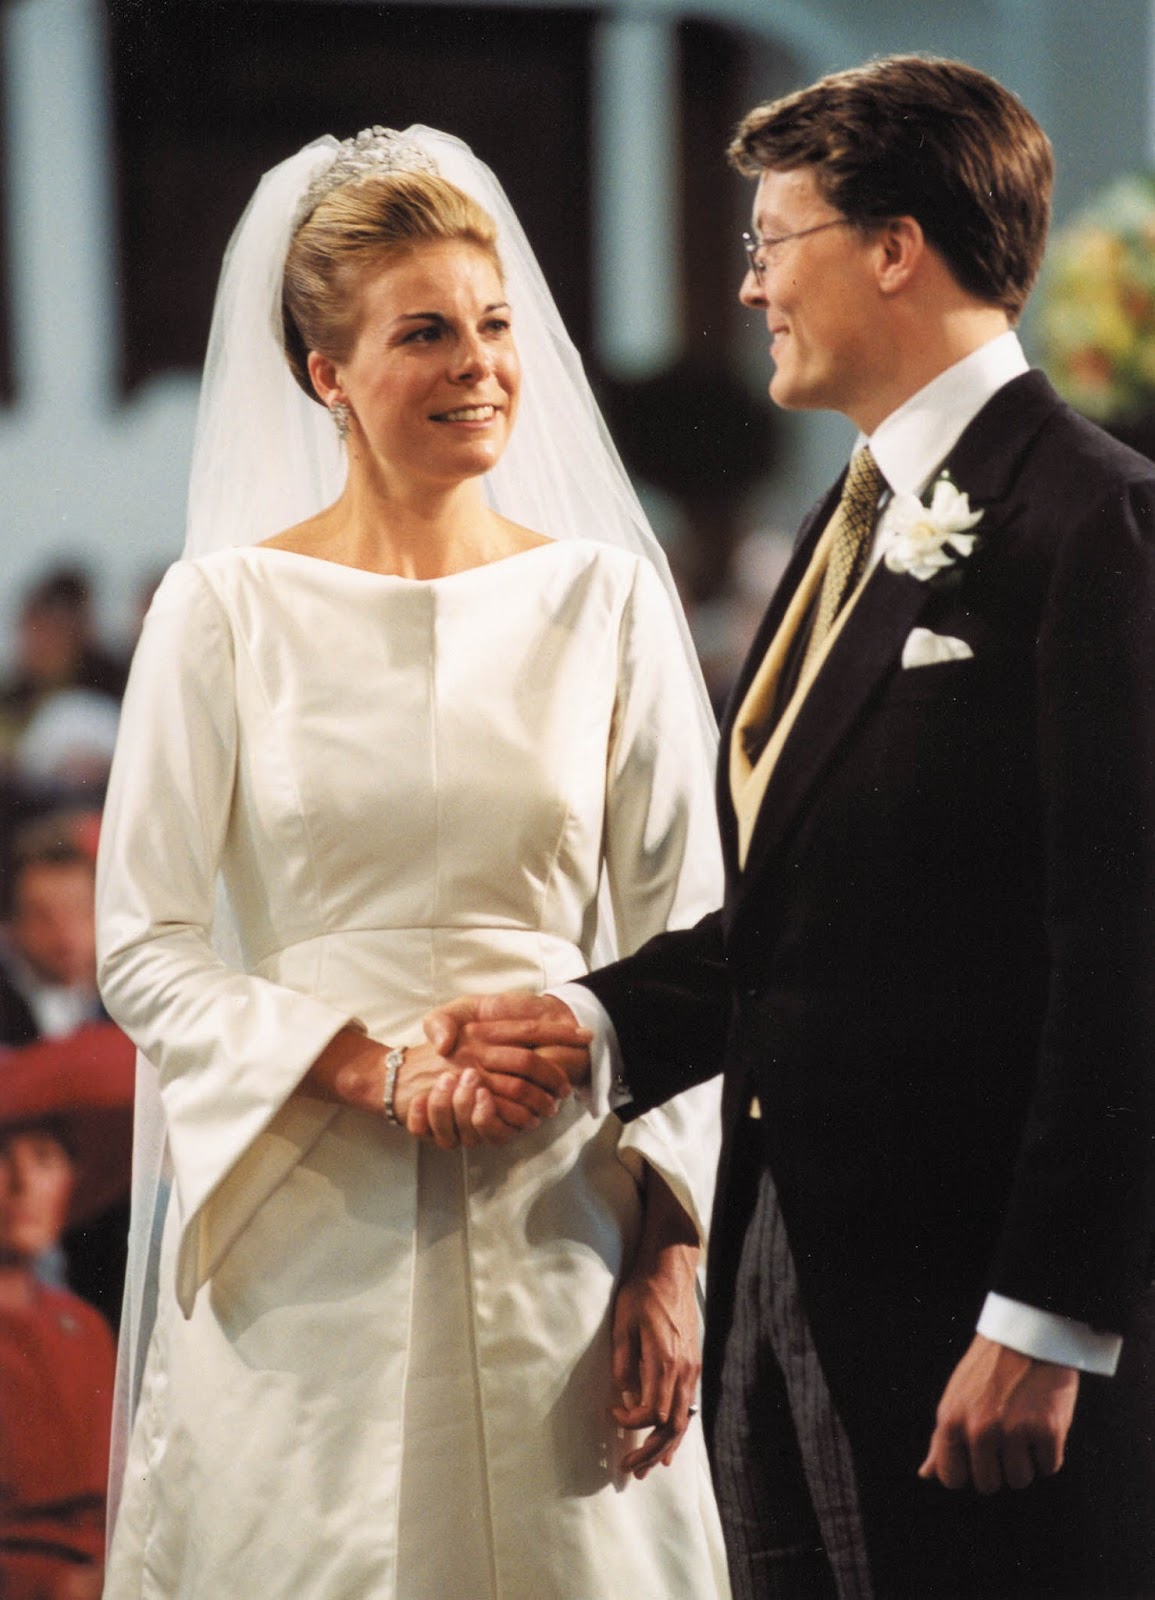 Queens of England: Royal Wedding Tiaras: Princess Laurentien of the Netherlands